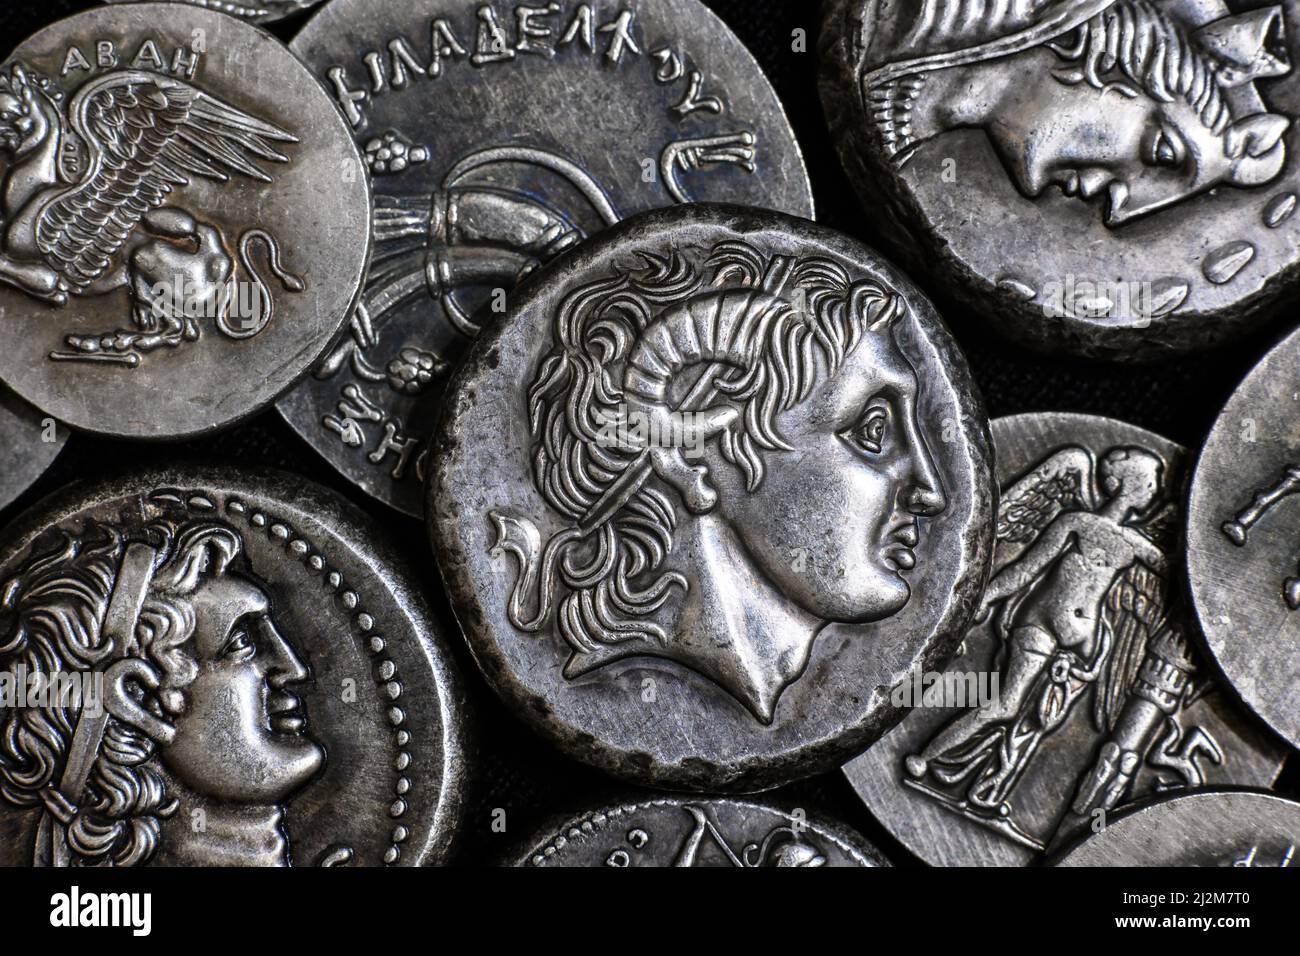 Antigua moneda griega con Alejandro Magno retrato, pila de monedas tetraddracmas de plata. Vista superior del antiguo dinero raro. Concepto de Grecia, monedas valiosas Foto de stock